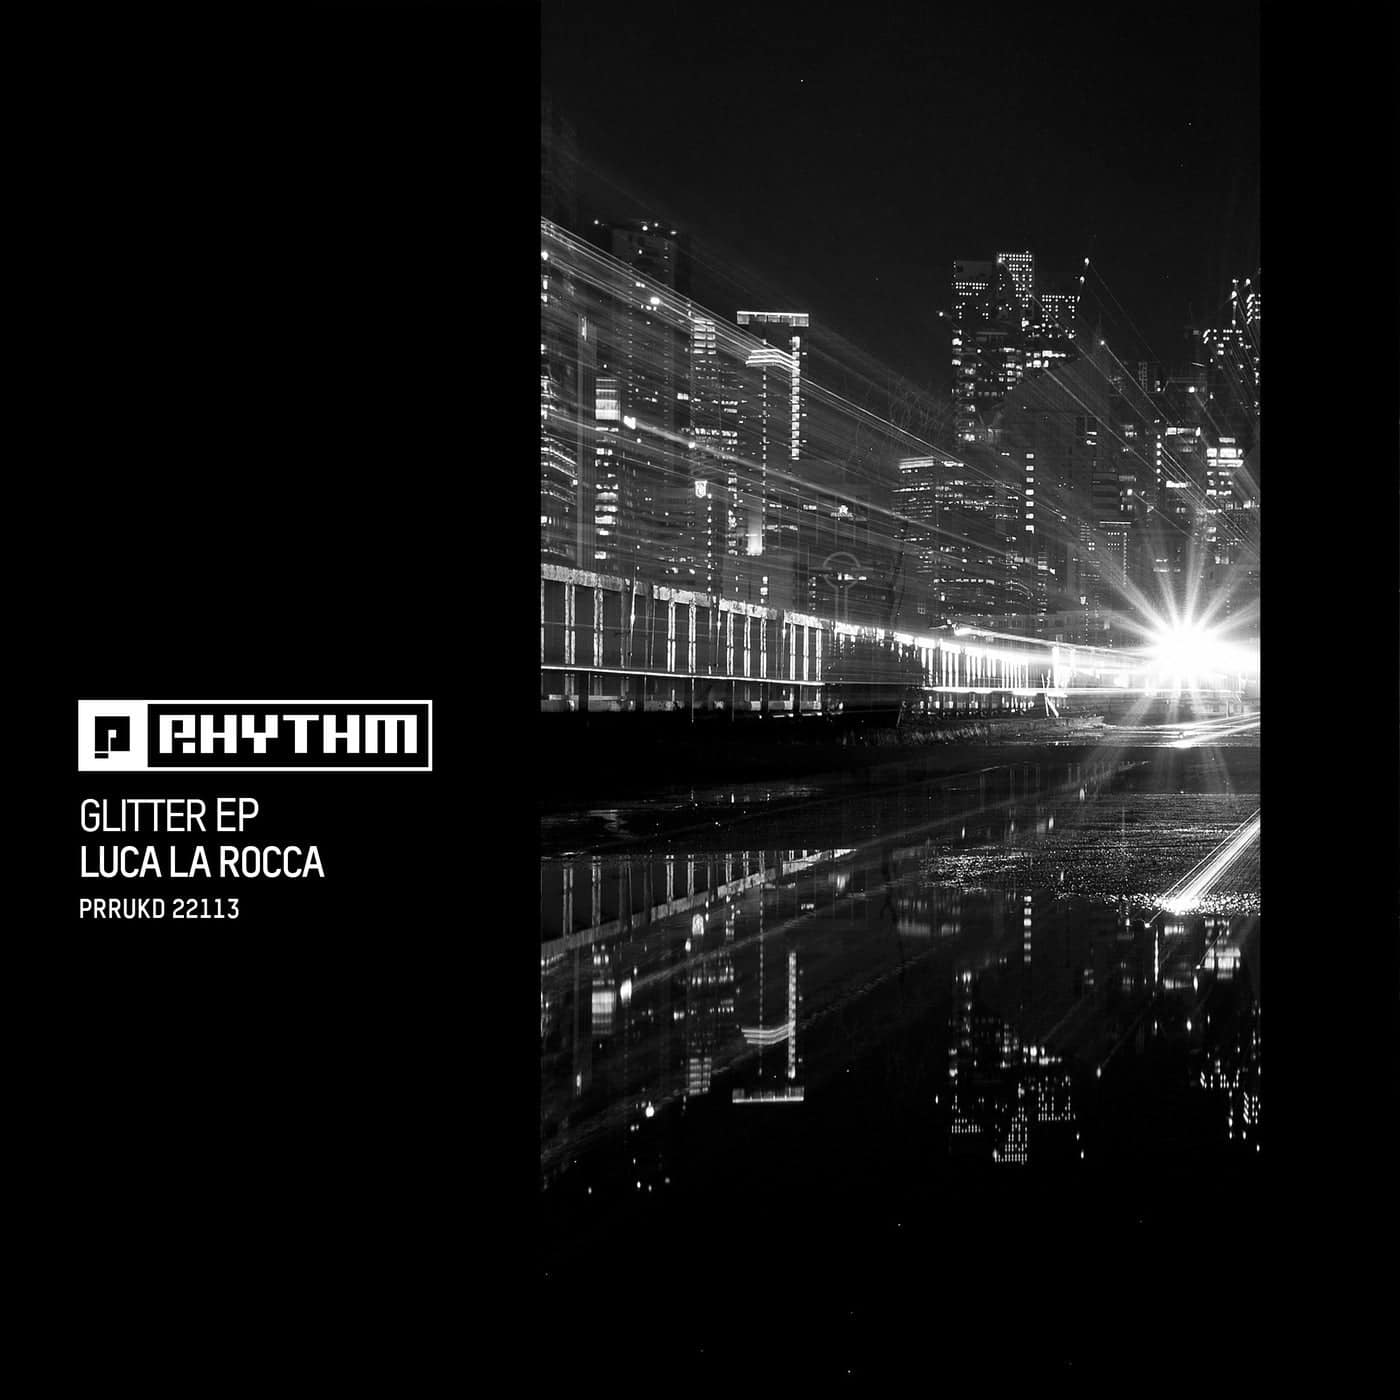 image cover: Luca La Rocca - Glitter EP / PRRUKD22113